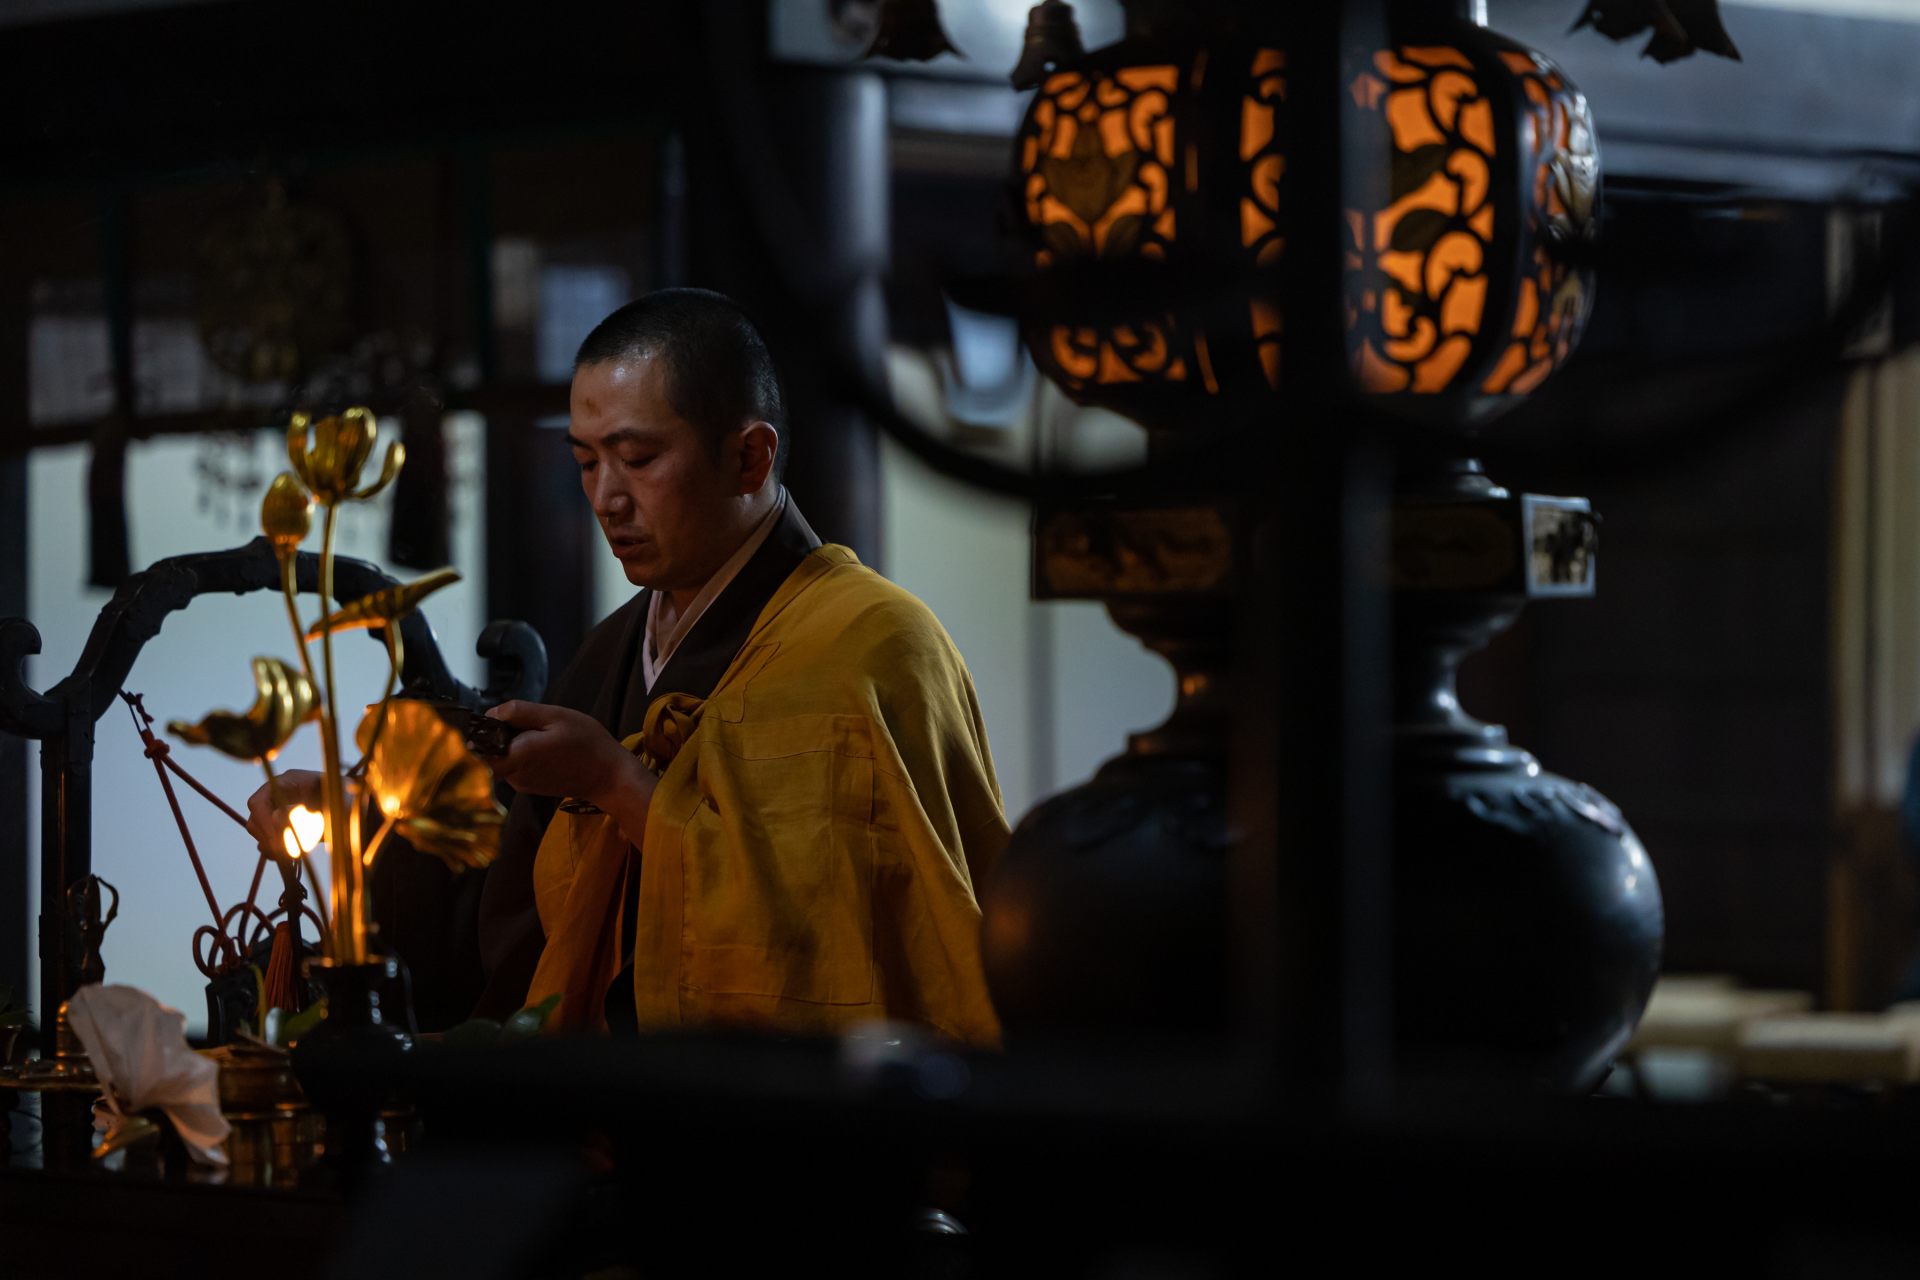 Rituel bouddhique ésotérique exécuté par un doushi au moment du service. On dit qu'en répétant chaque mouvement, on devient un avec le Bouddha.